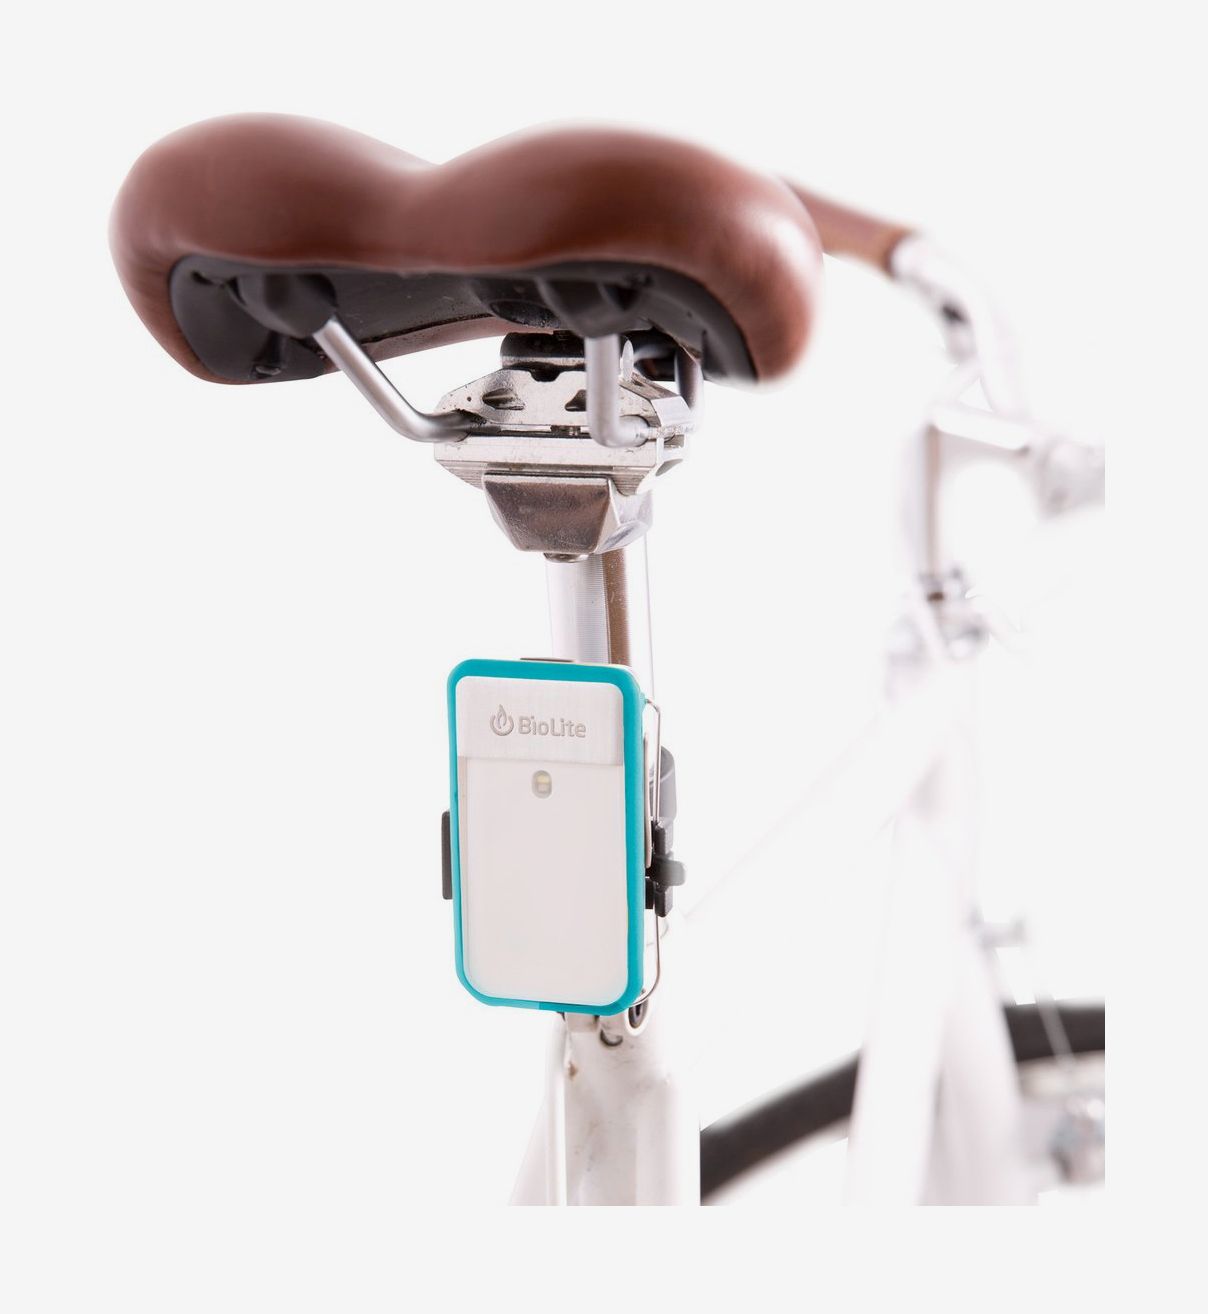 bike safety equipment accessories